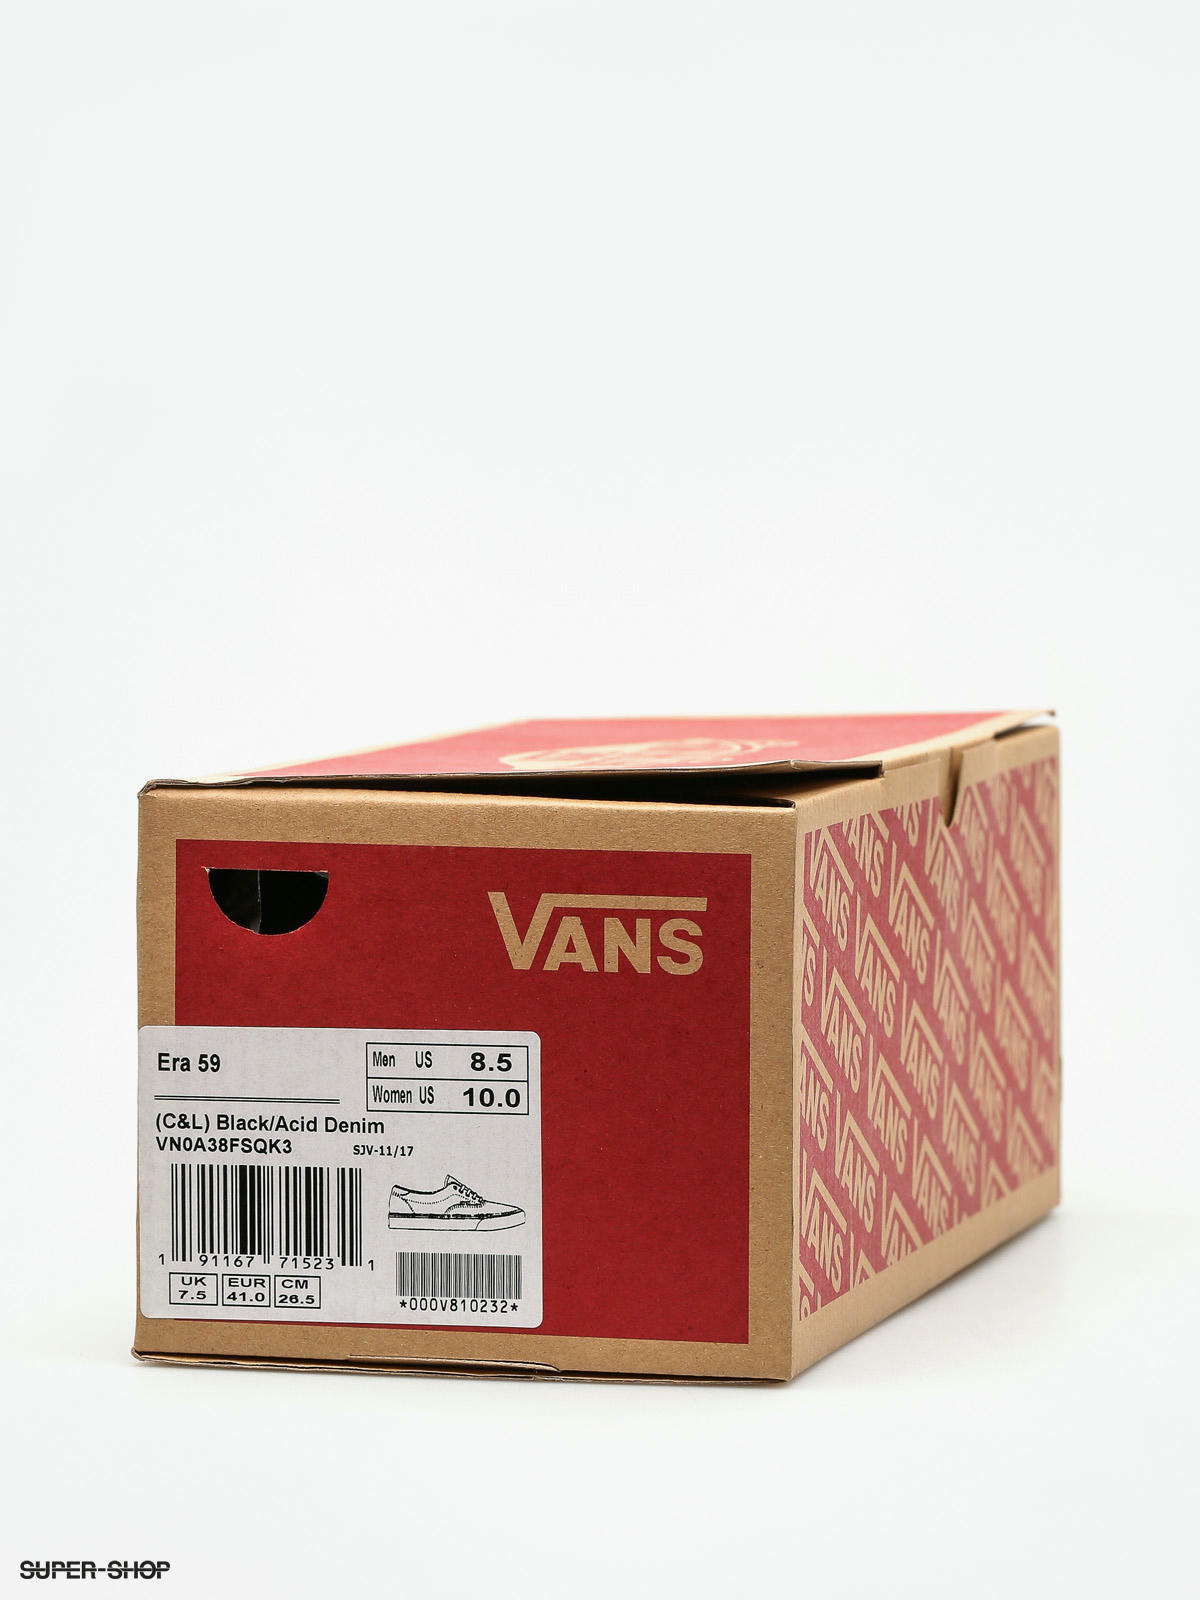 Vans Men's C&L Era 59 Black/Acid Denim Canvas Skate Shoes